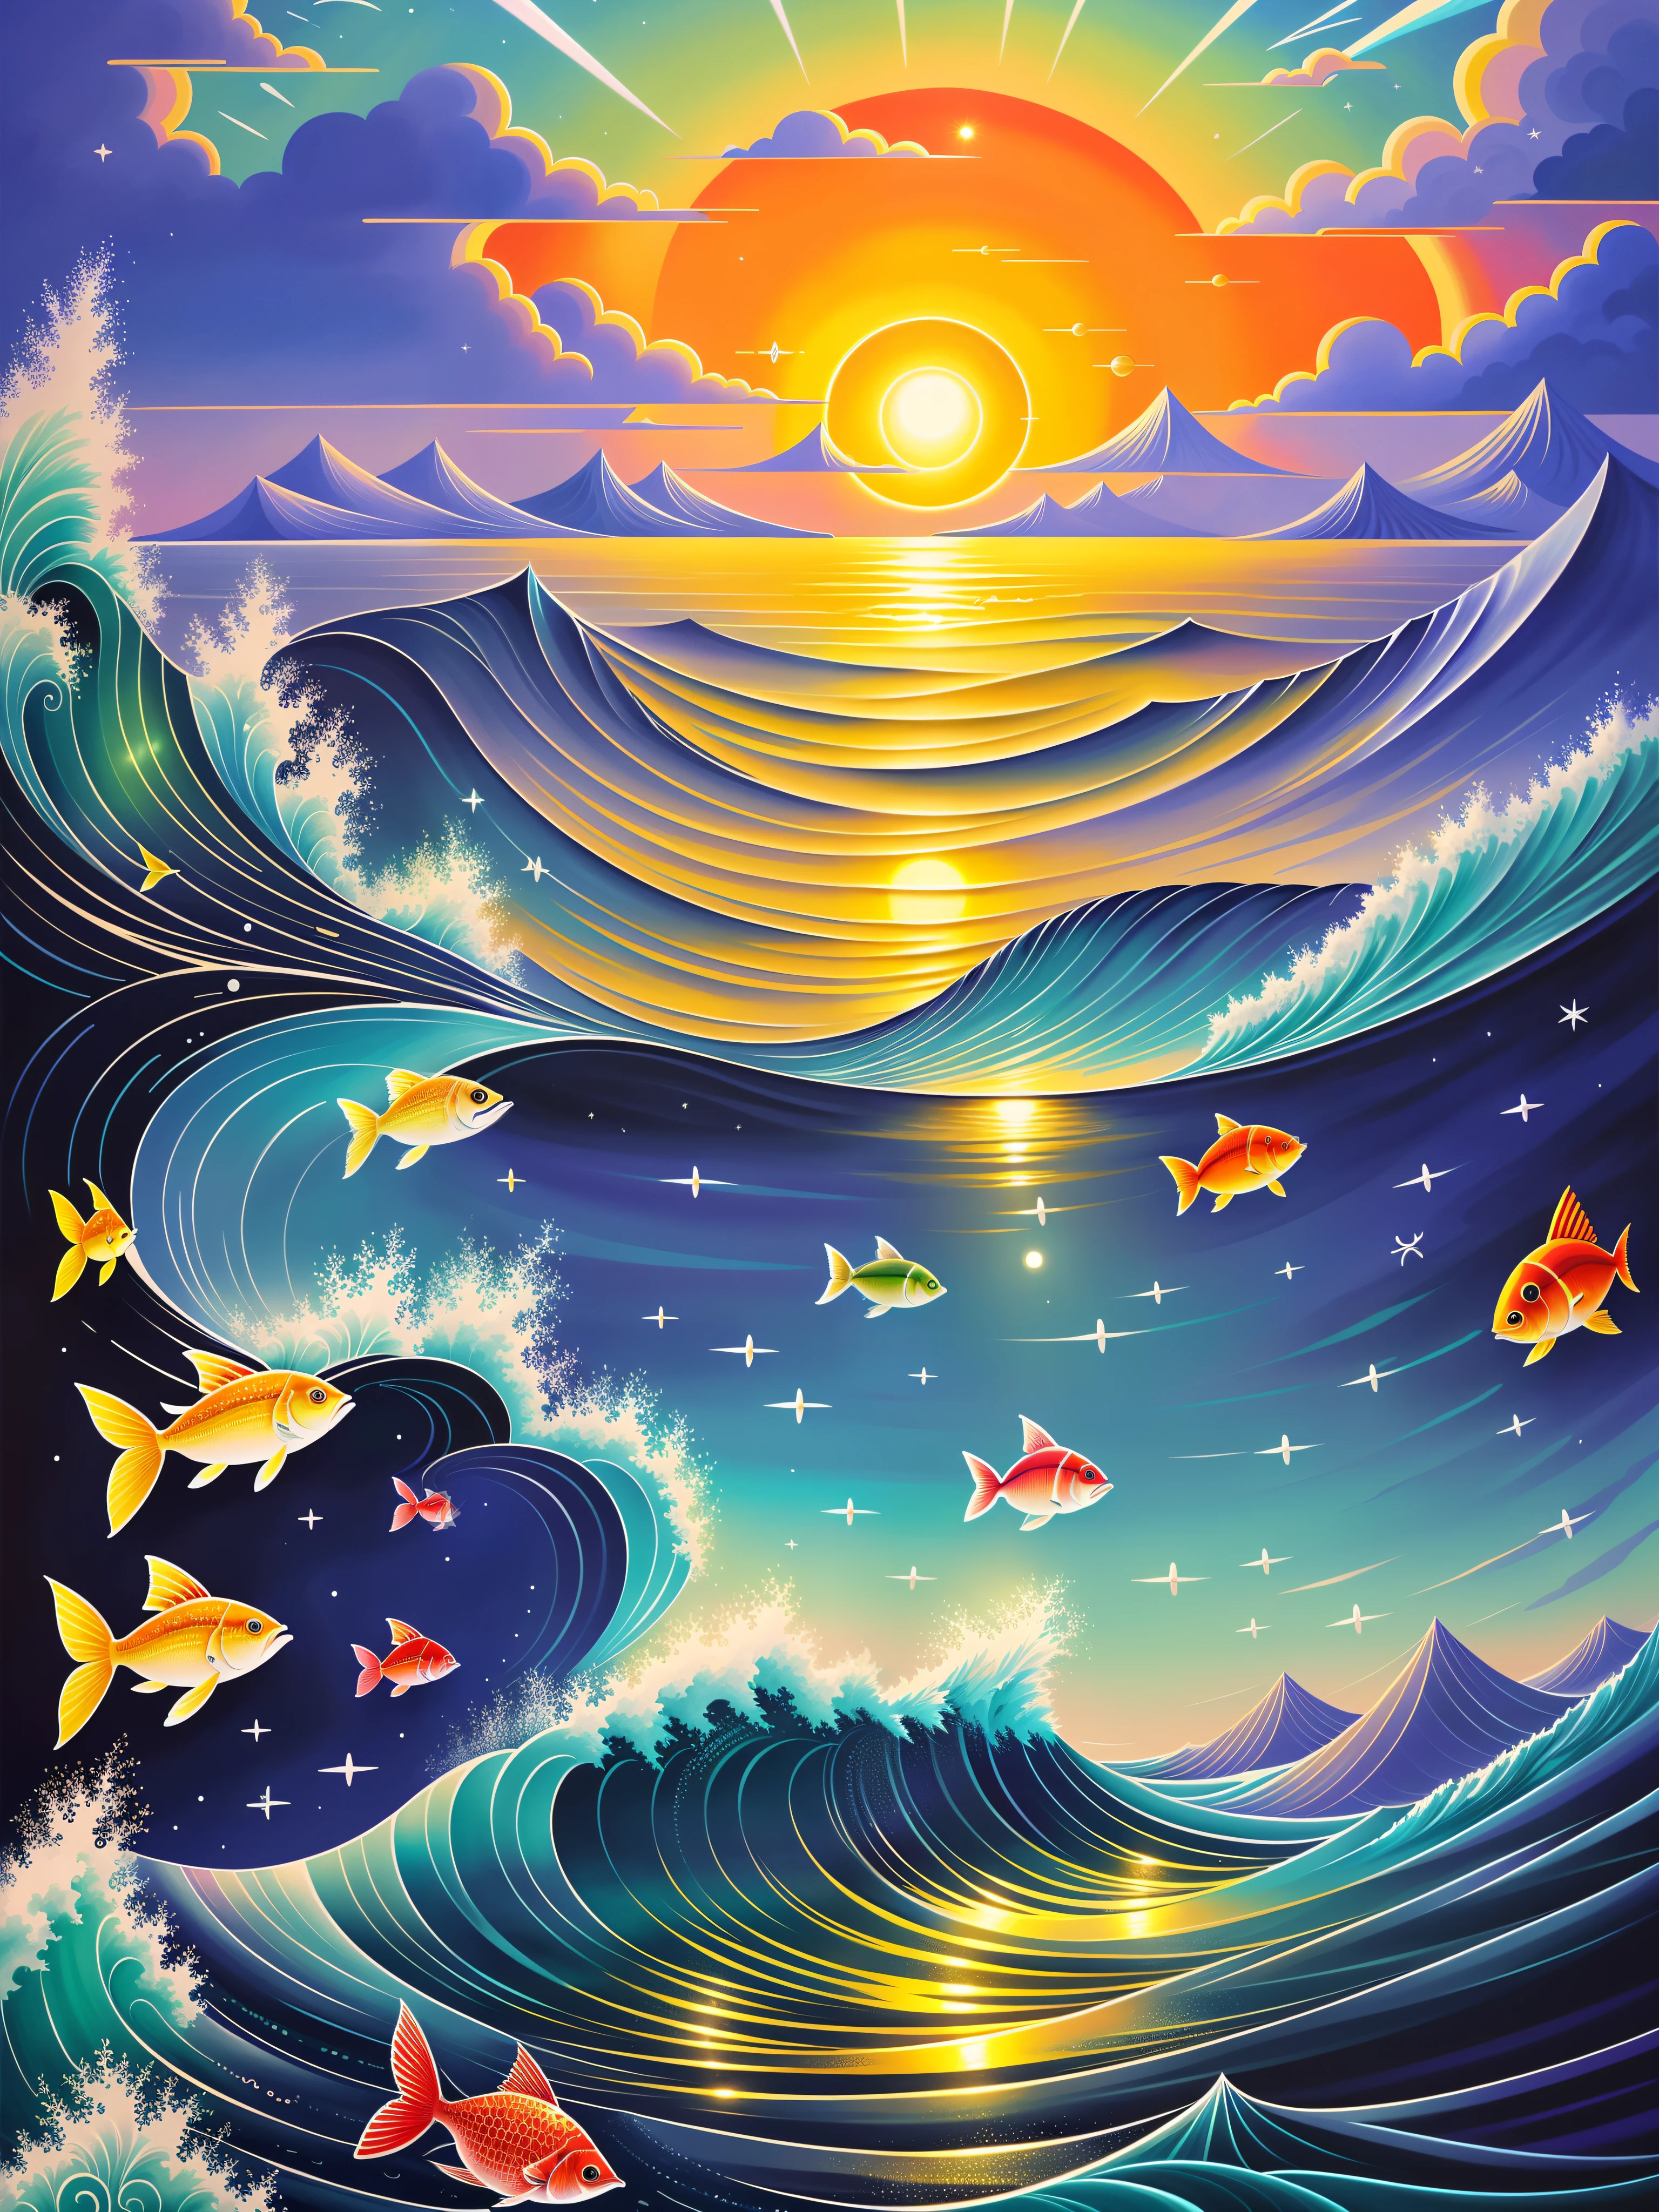 Сцена океана с красочной иллюстрацией солнца и рыбы, （（（полная луна））），Много рыбы，просто шутка, красивая иллюстрация произведения искусства, волшебный океан, вдохновленный Сирилом Роландо, фантастический морской пейзаж, Красивое искусство UHD 8 K, высокодетализированная цифровая живопись, в стиле Сирила Роландо, Высокодетализированное цифровое искусство 8K, подробный пейзаж мечты, красочный плоский сюрреалистический эфирный, хаотичная обстановка на море